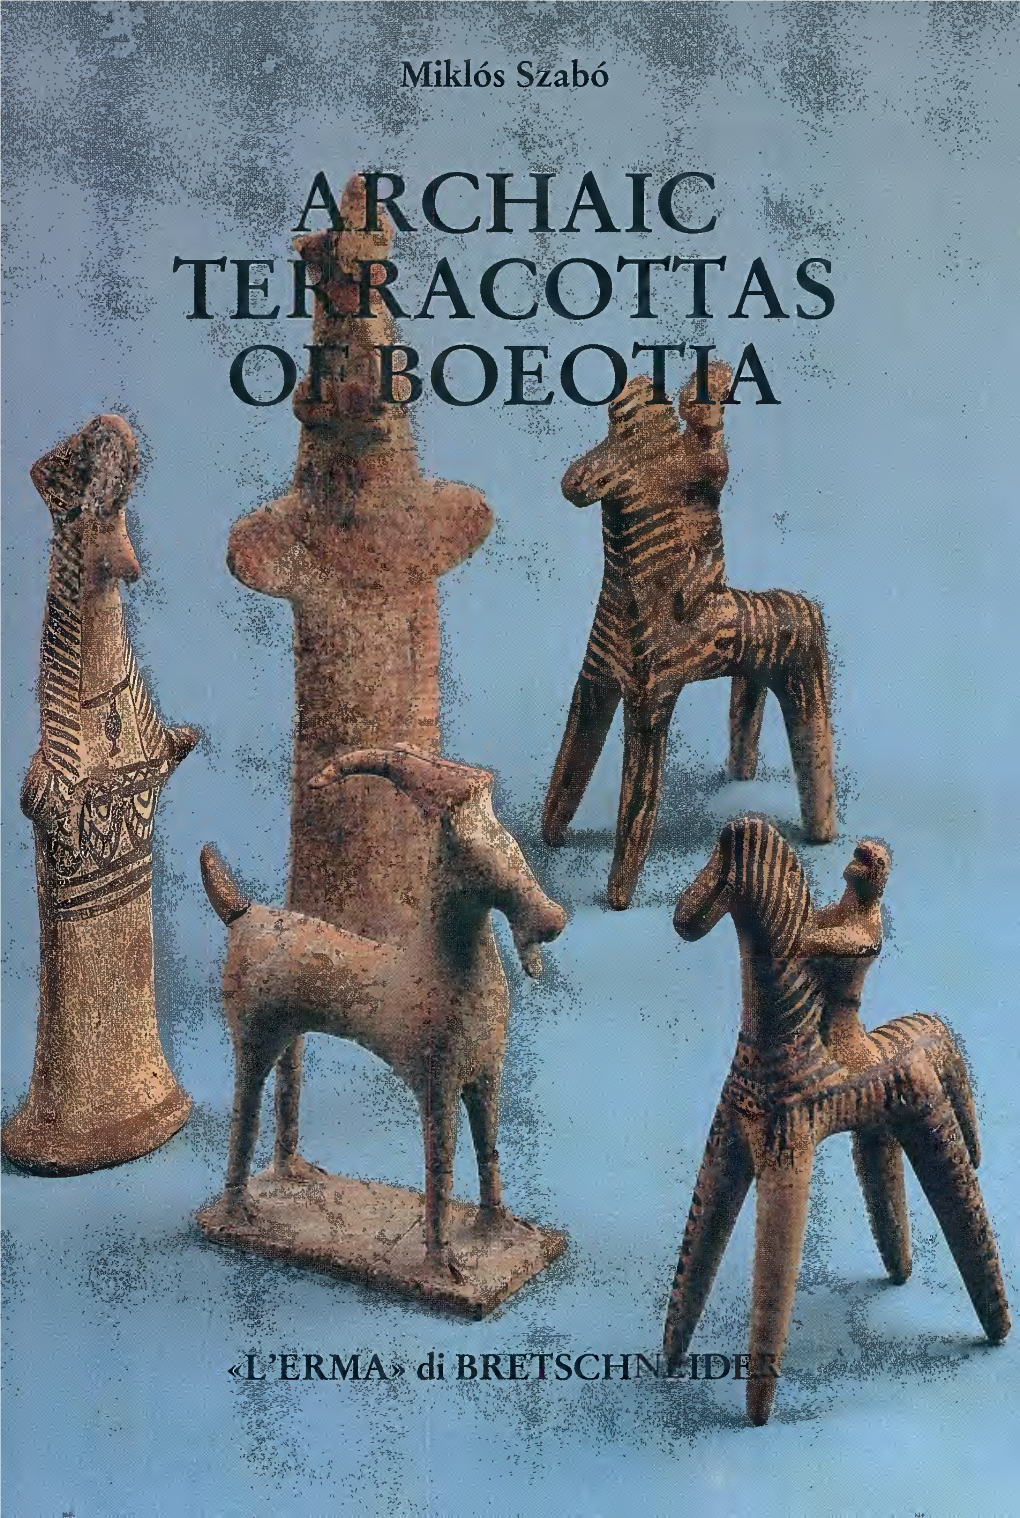 Archaic Acottas Oeotja